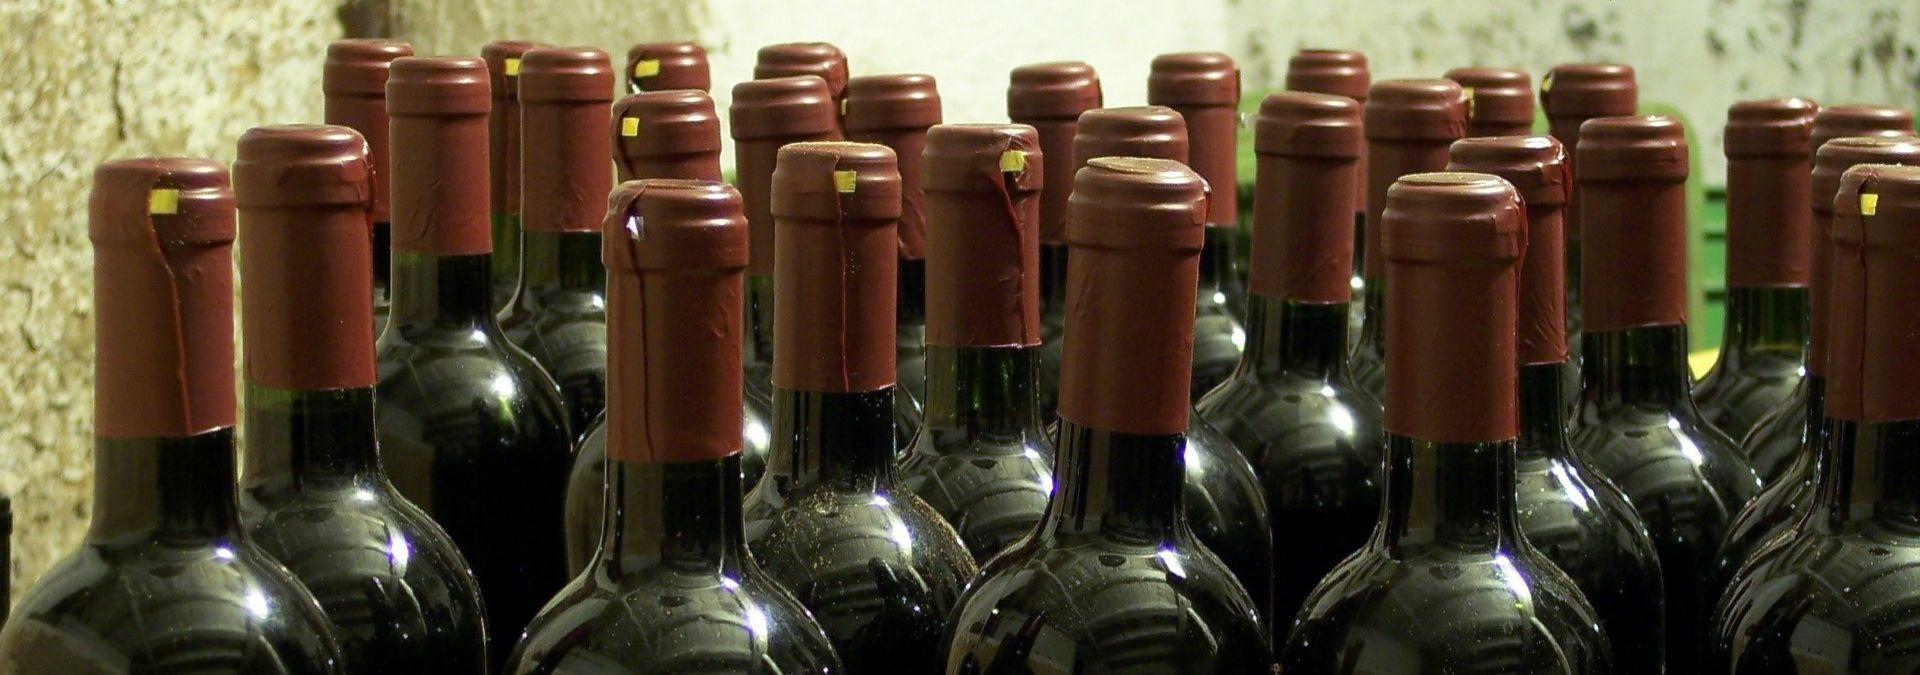 Pourquoi faut-il coucher les bouteilles de vin ?